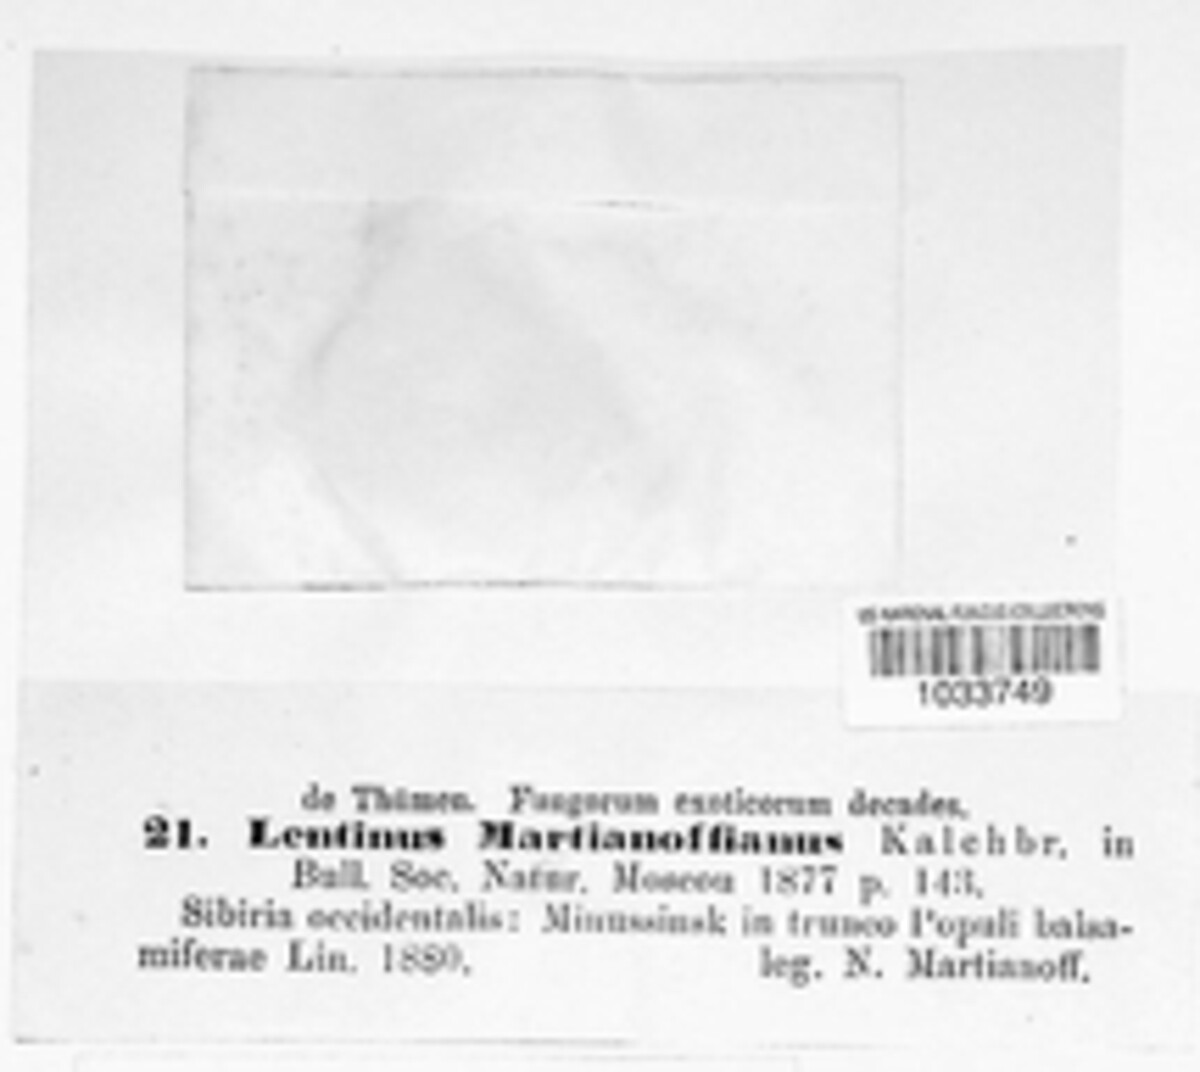 Lentinus martianoffianus image